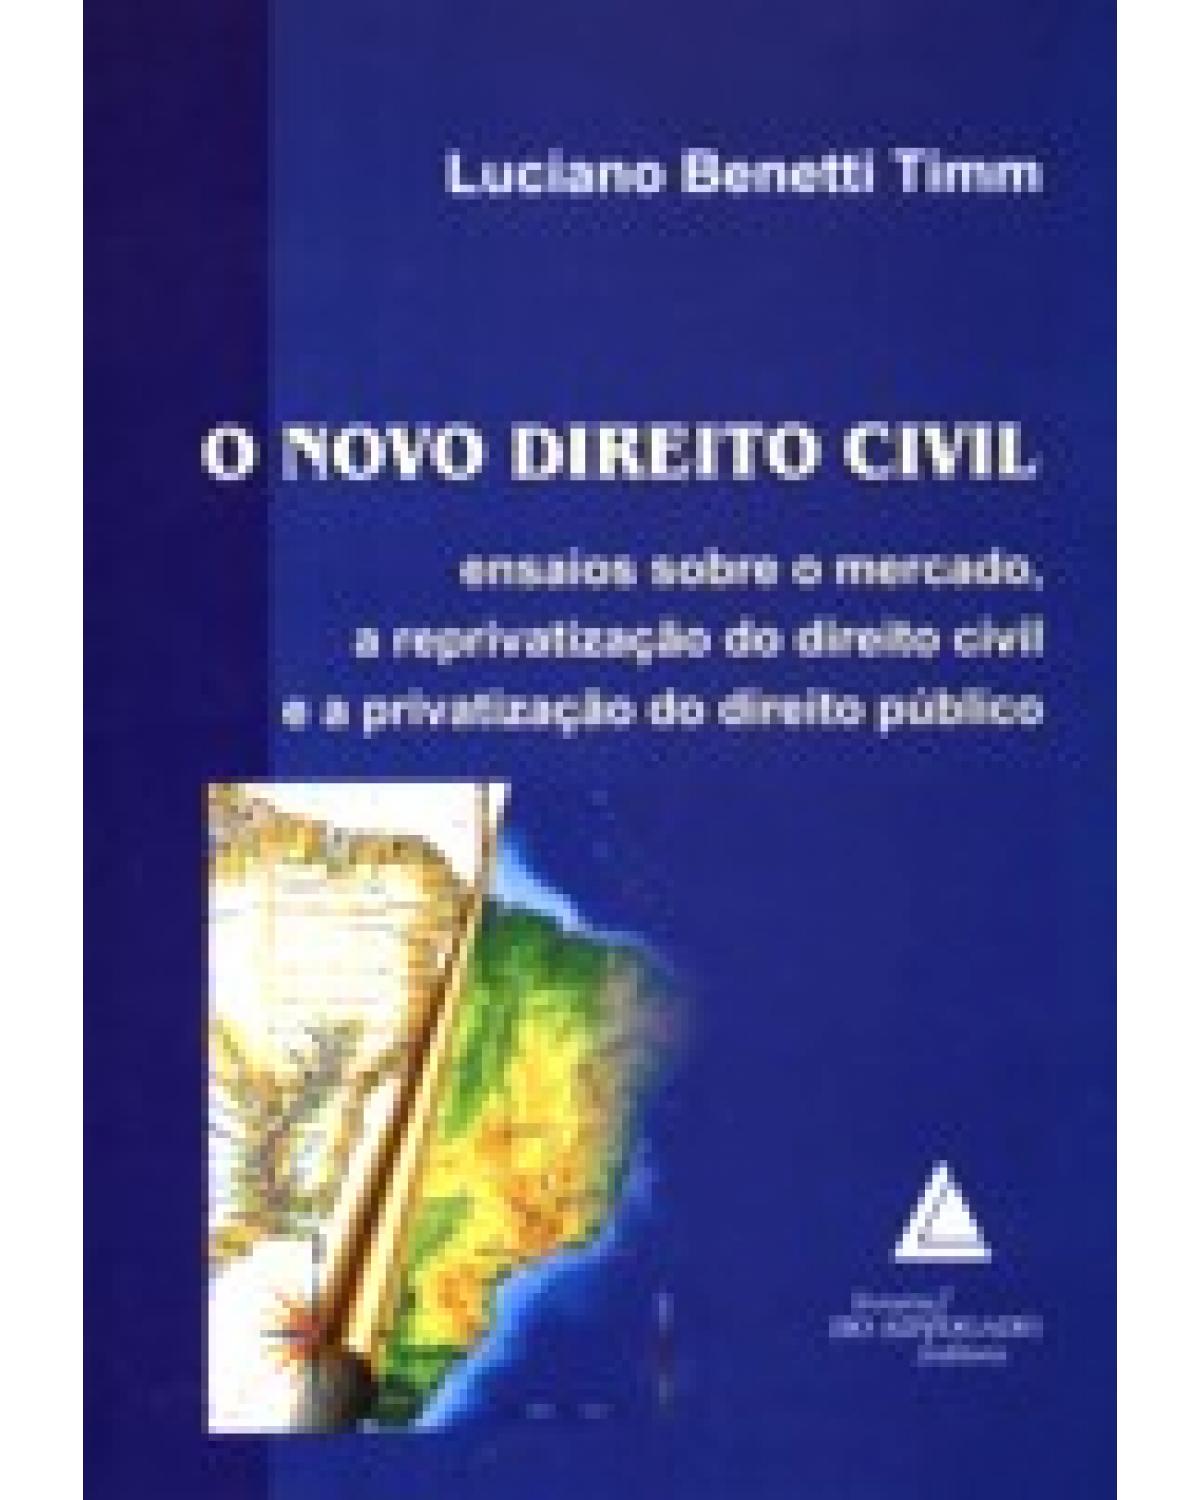 O novo direito civil: Ensaios sobre o mercado, a reprivatização do direito civil e a privatização do direito público - 1ª Edição